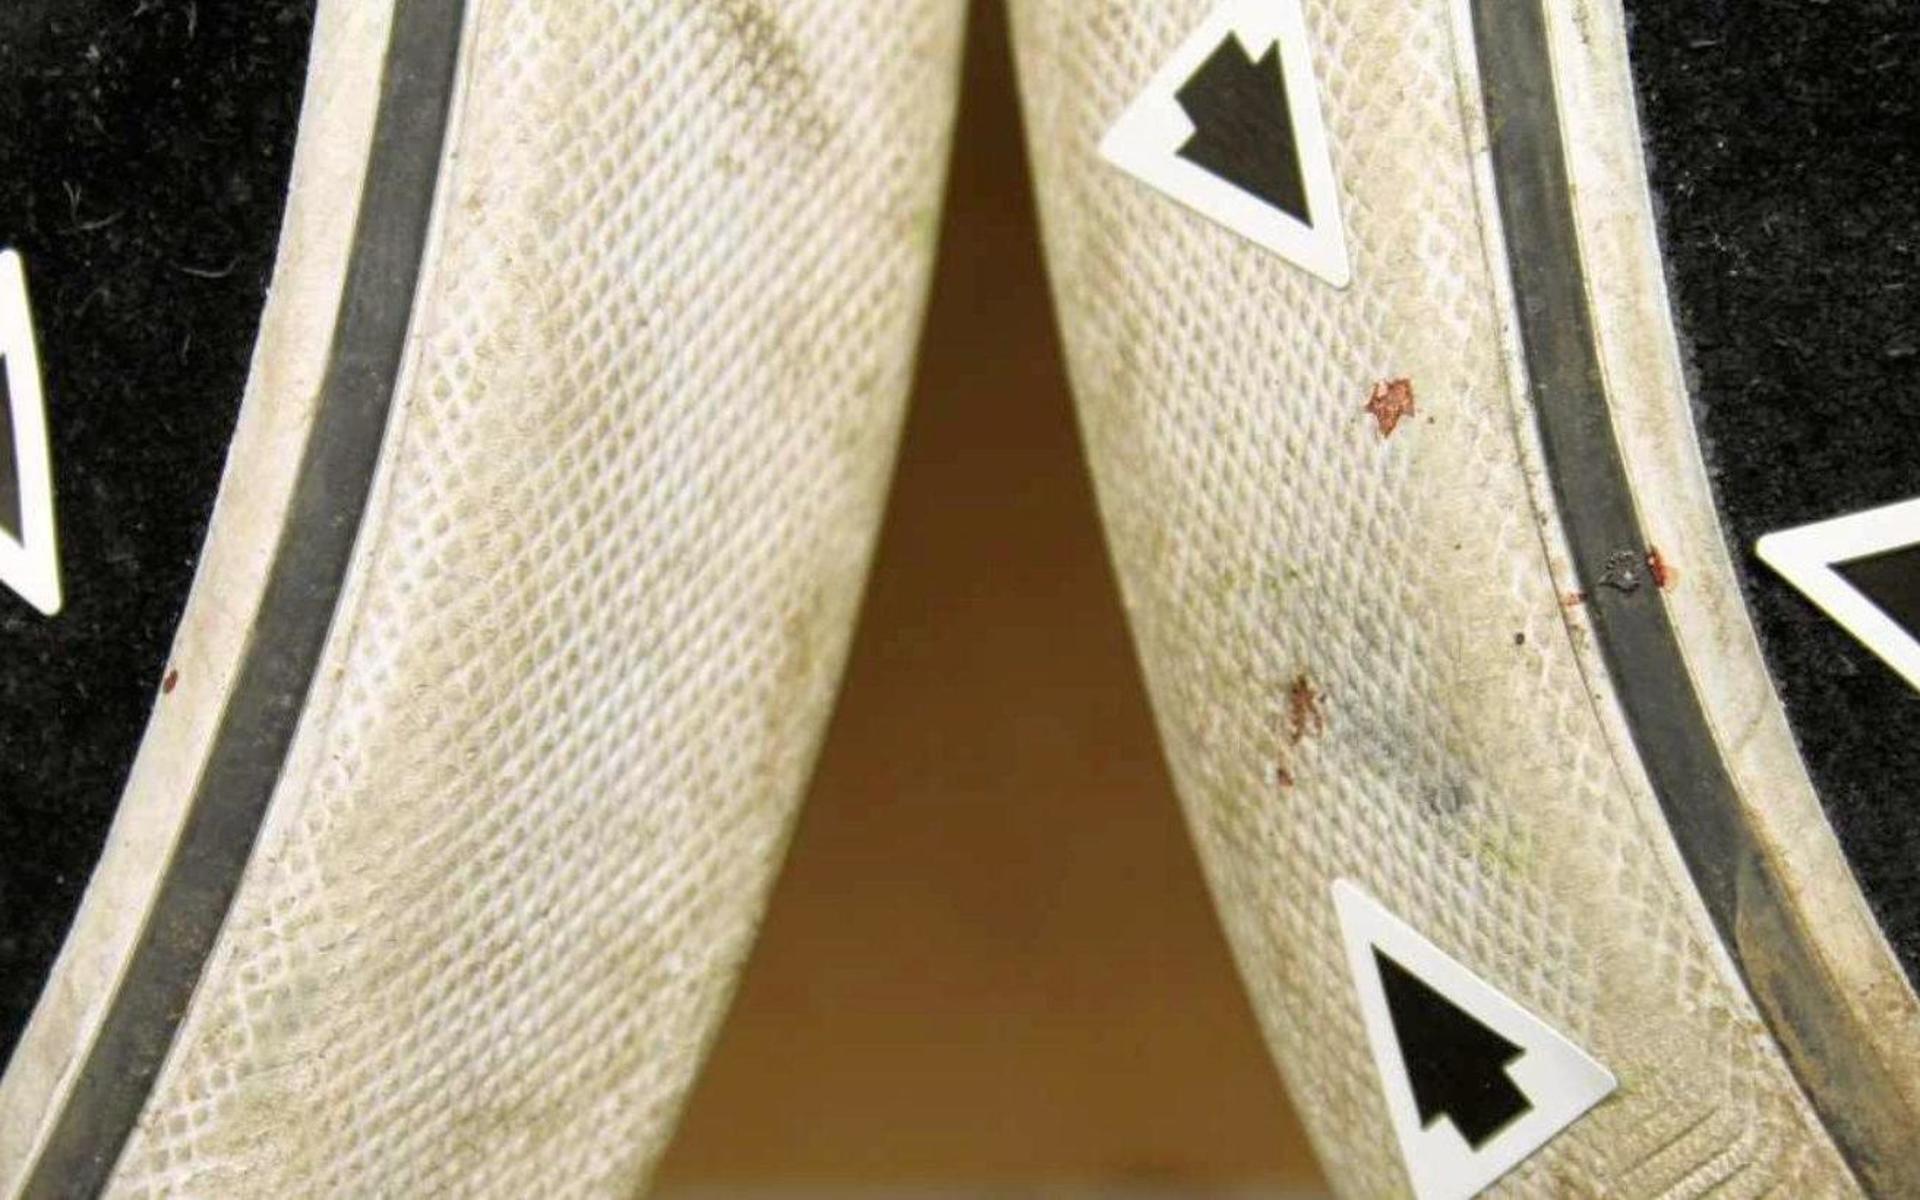 På en av ungdomarnas skor hittades blodstänk från mannen som skadades svårt efter misshandeln.